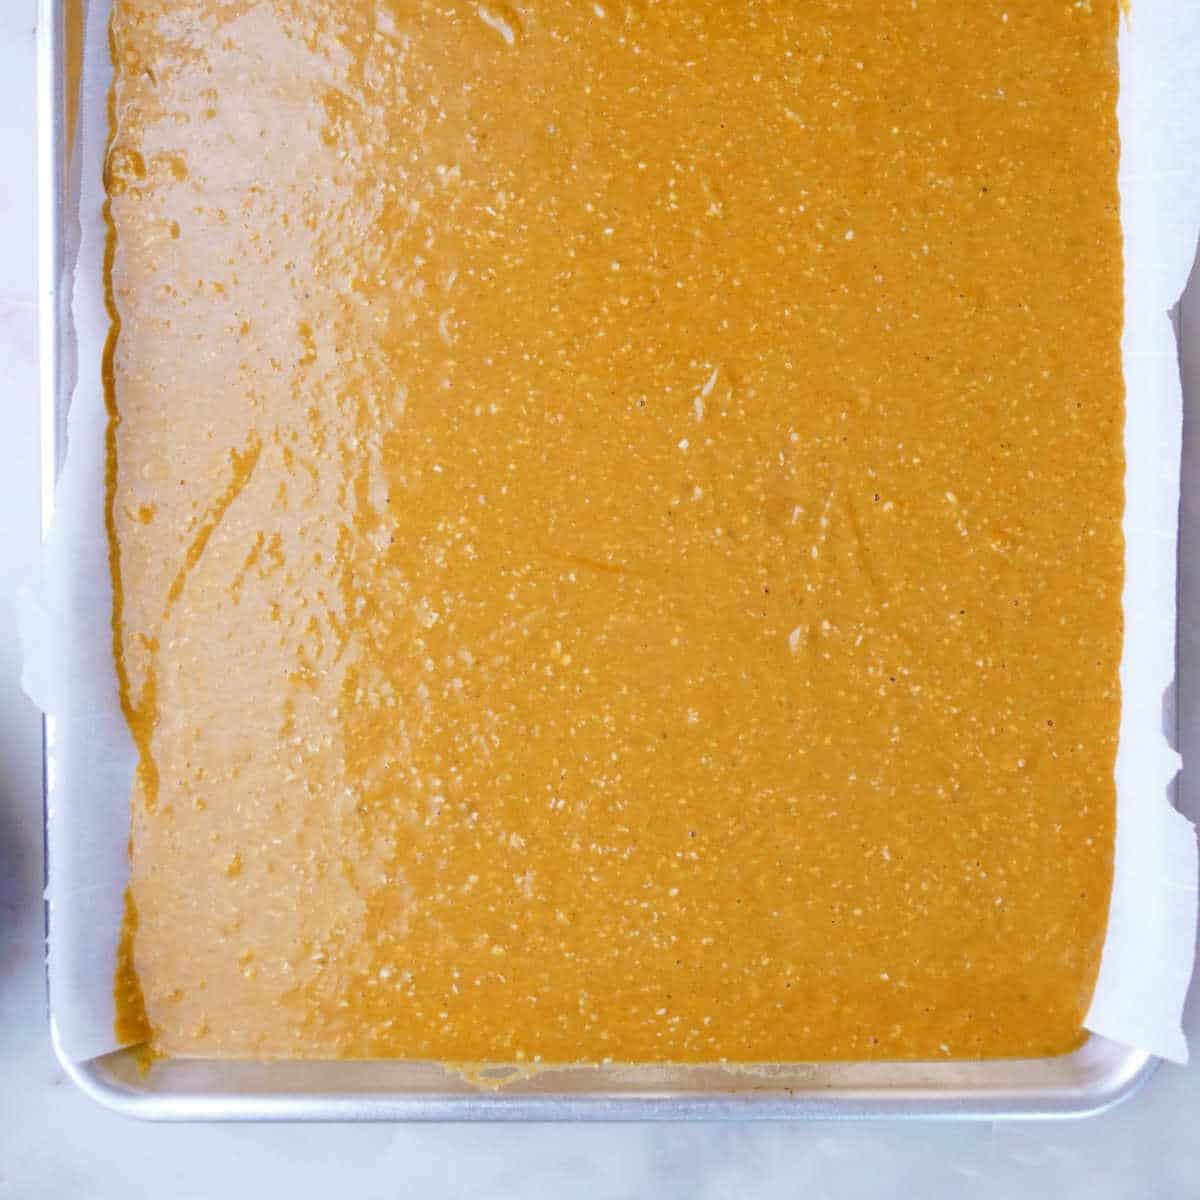 pumpkin bar batter spread on a half sheet pan before baking